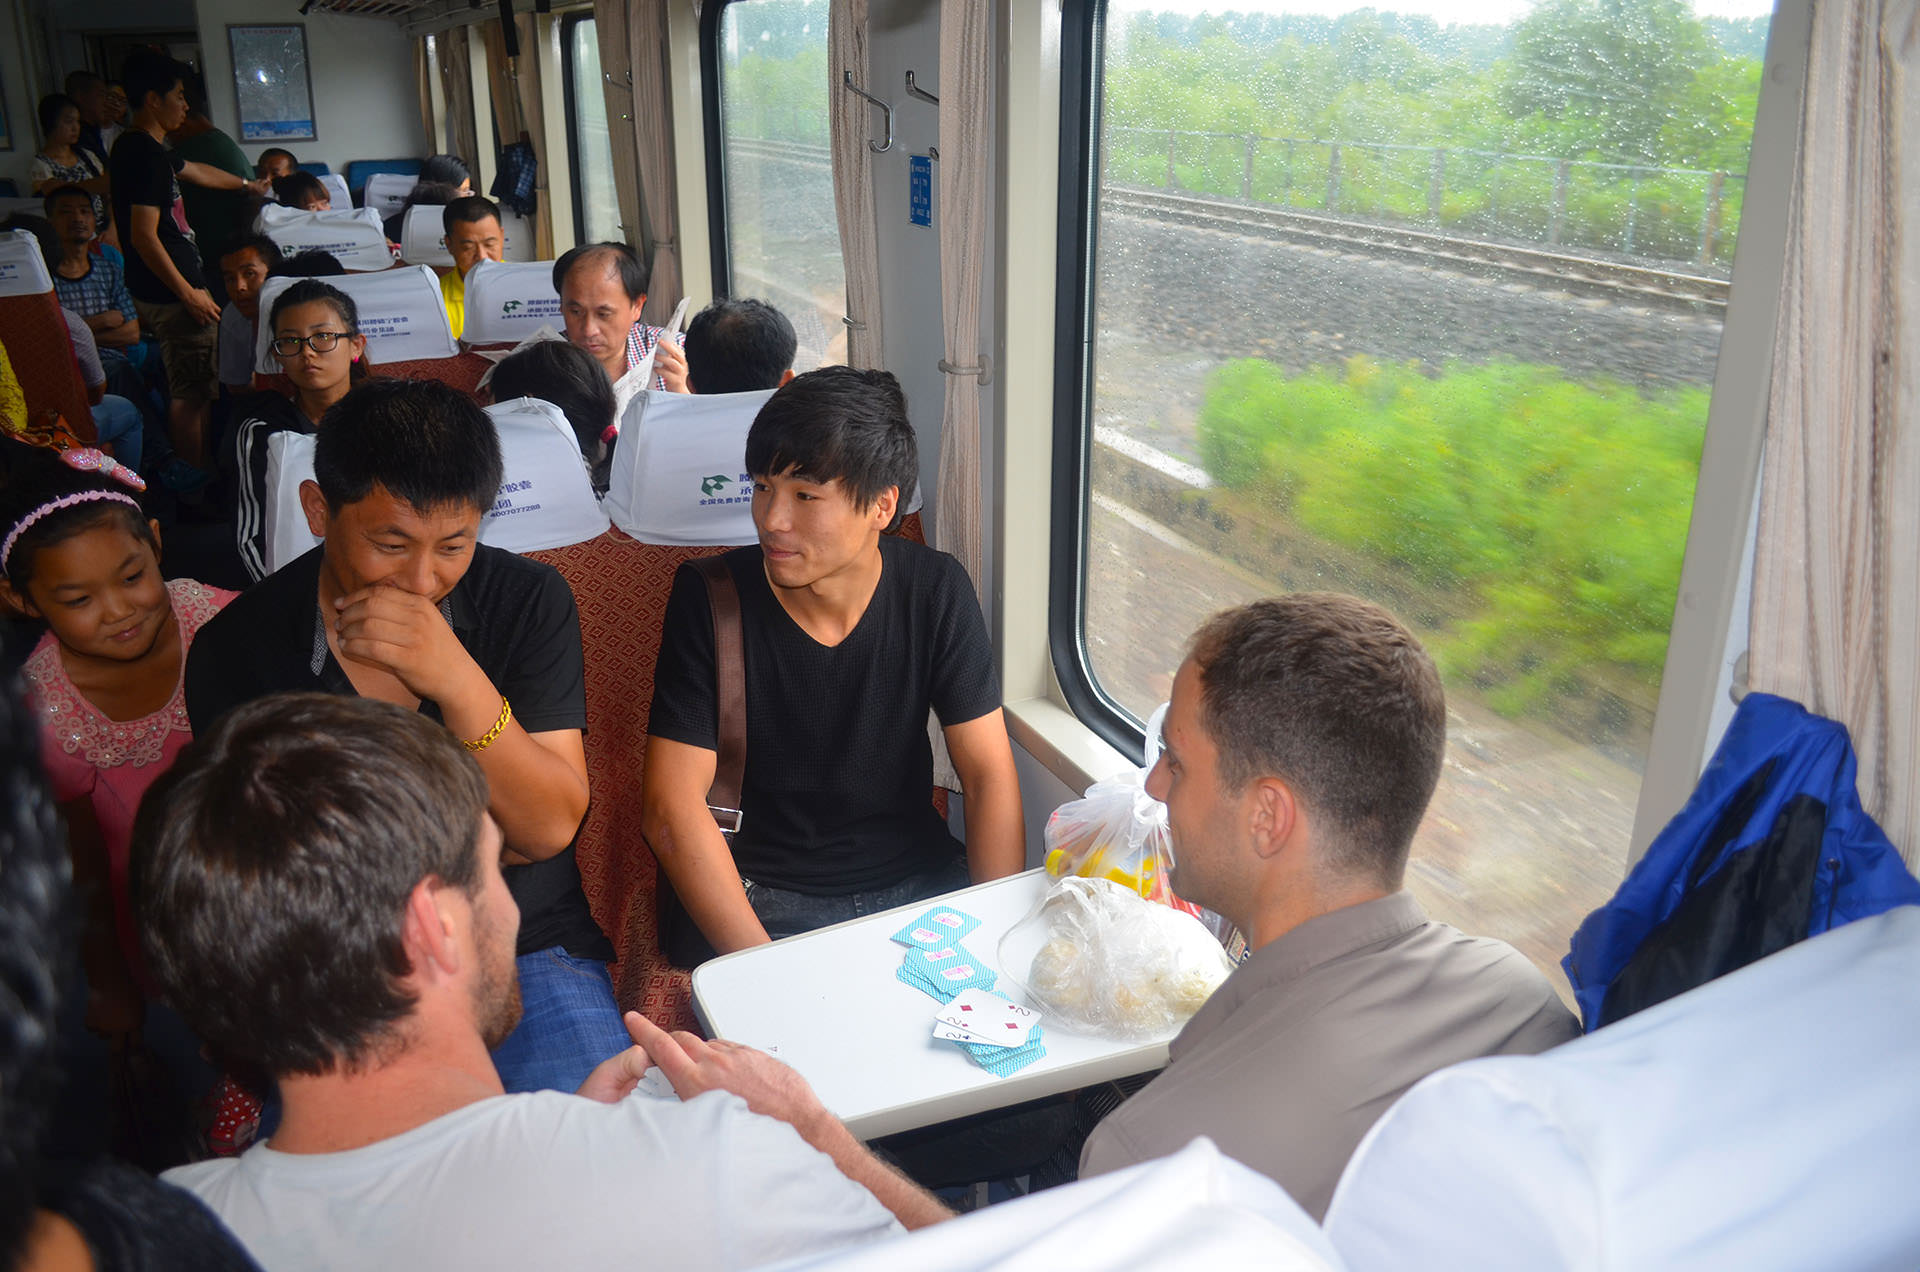 נסיעה ברכבת בסין. ההתרגשות ממערבים גדולה (צילום: נוגה פייגה)